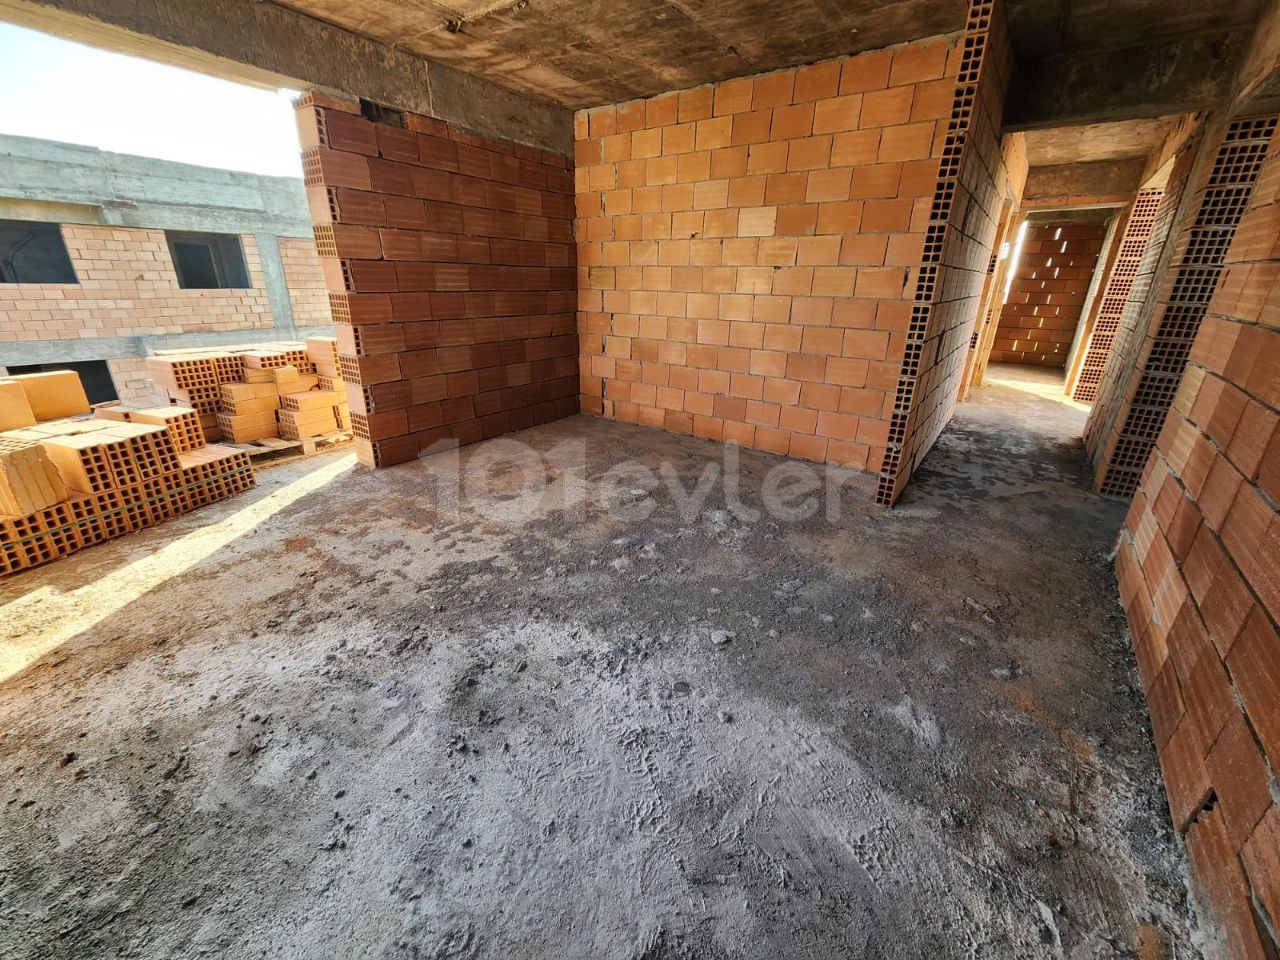  Mağusa Çanakkale bölgesinde satılık penthouse ﻿ 2+1 130 m2 Eşdeğer koçan